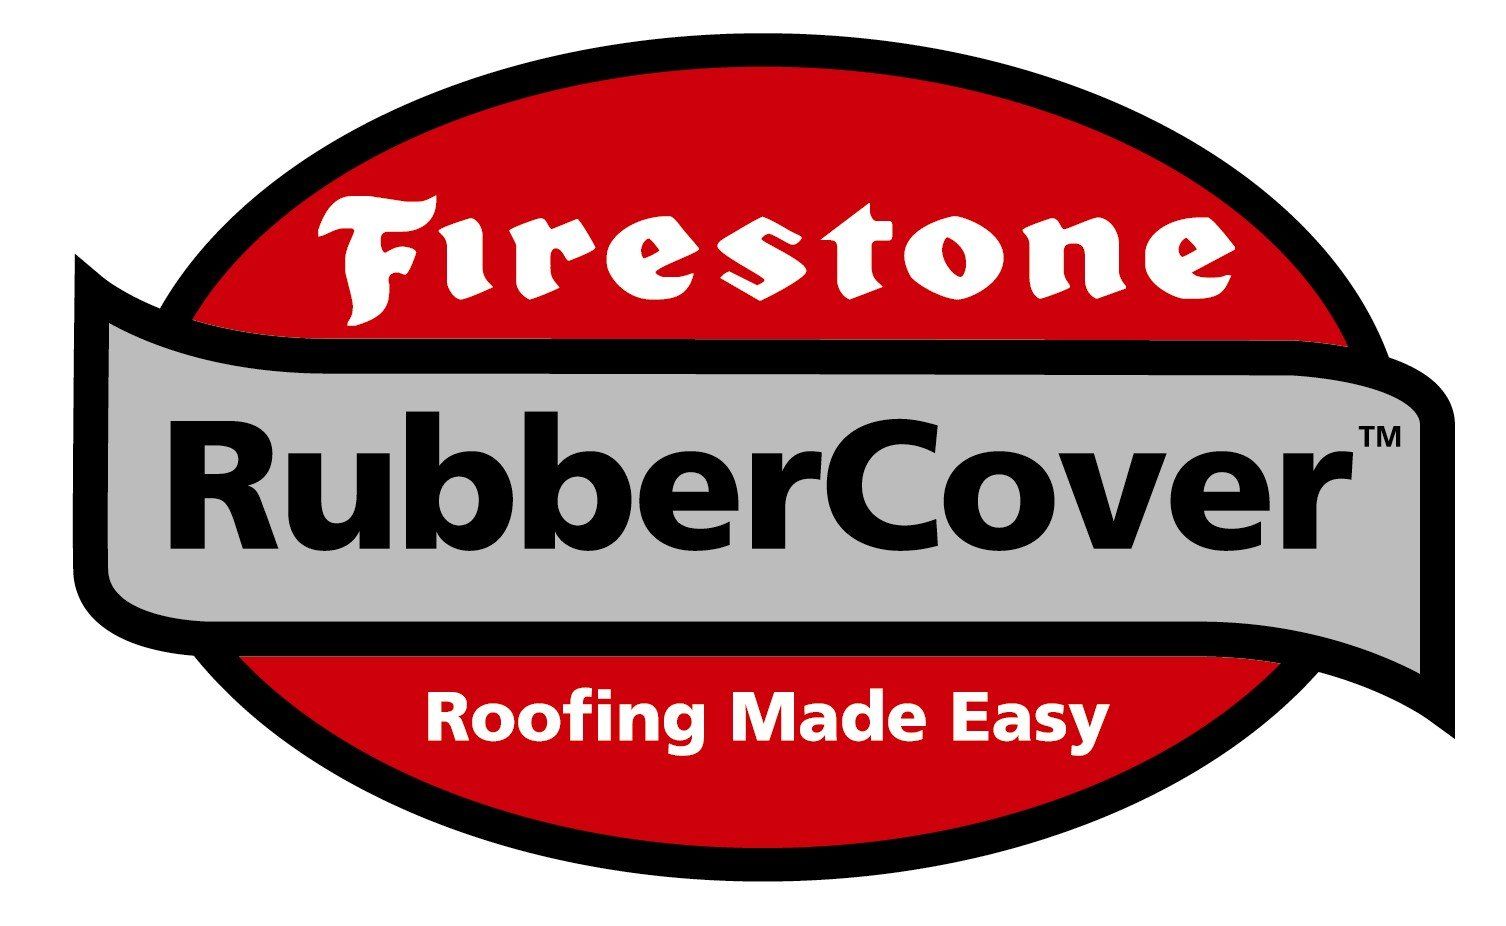 Firestone RubberCover logo